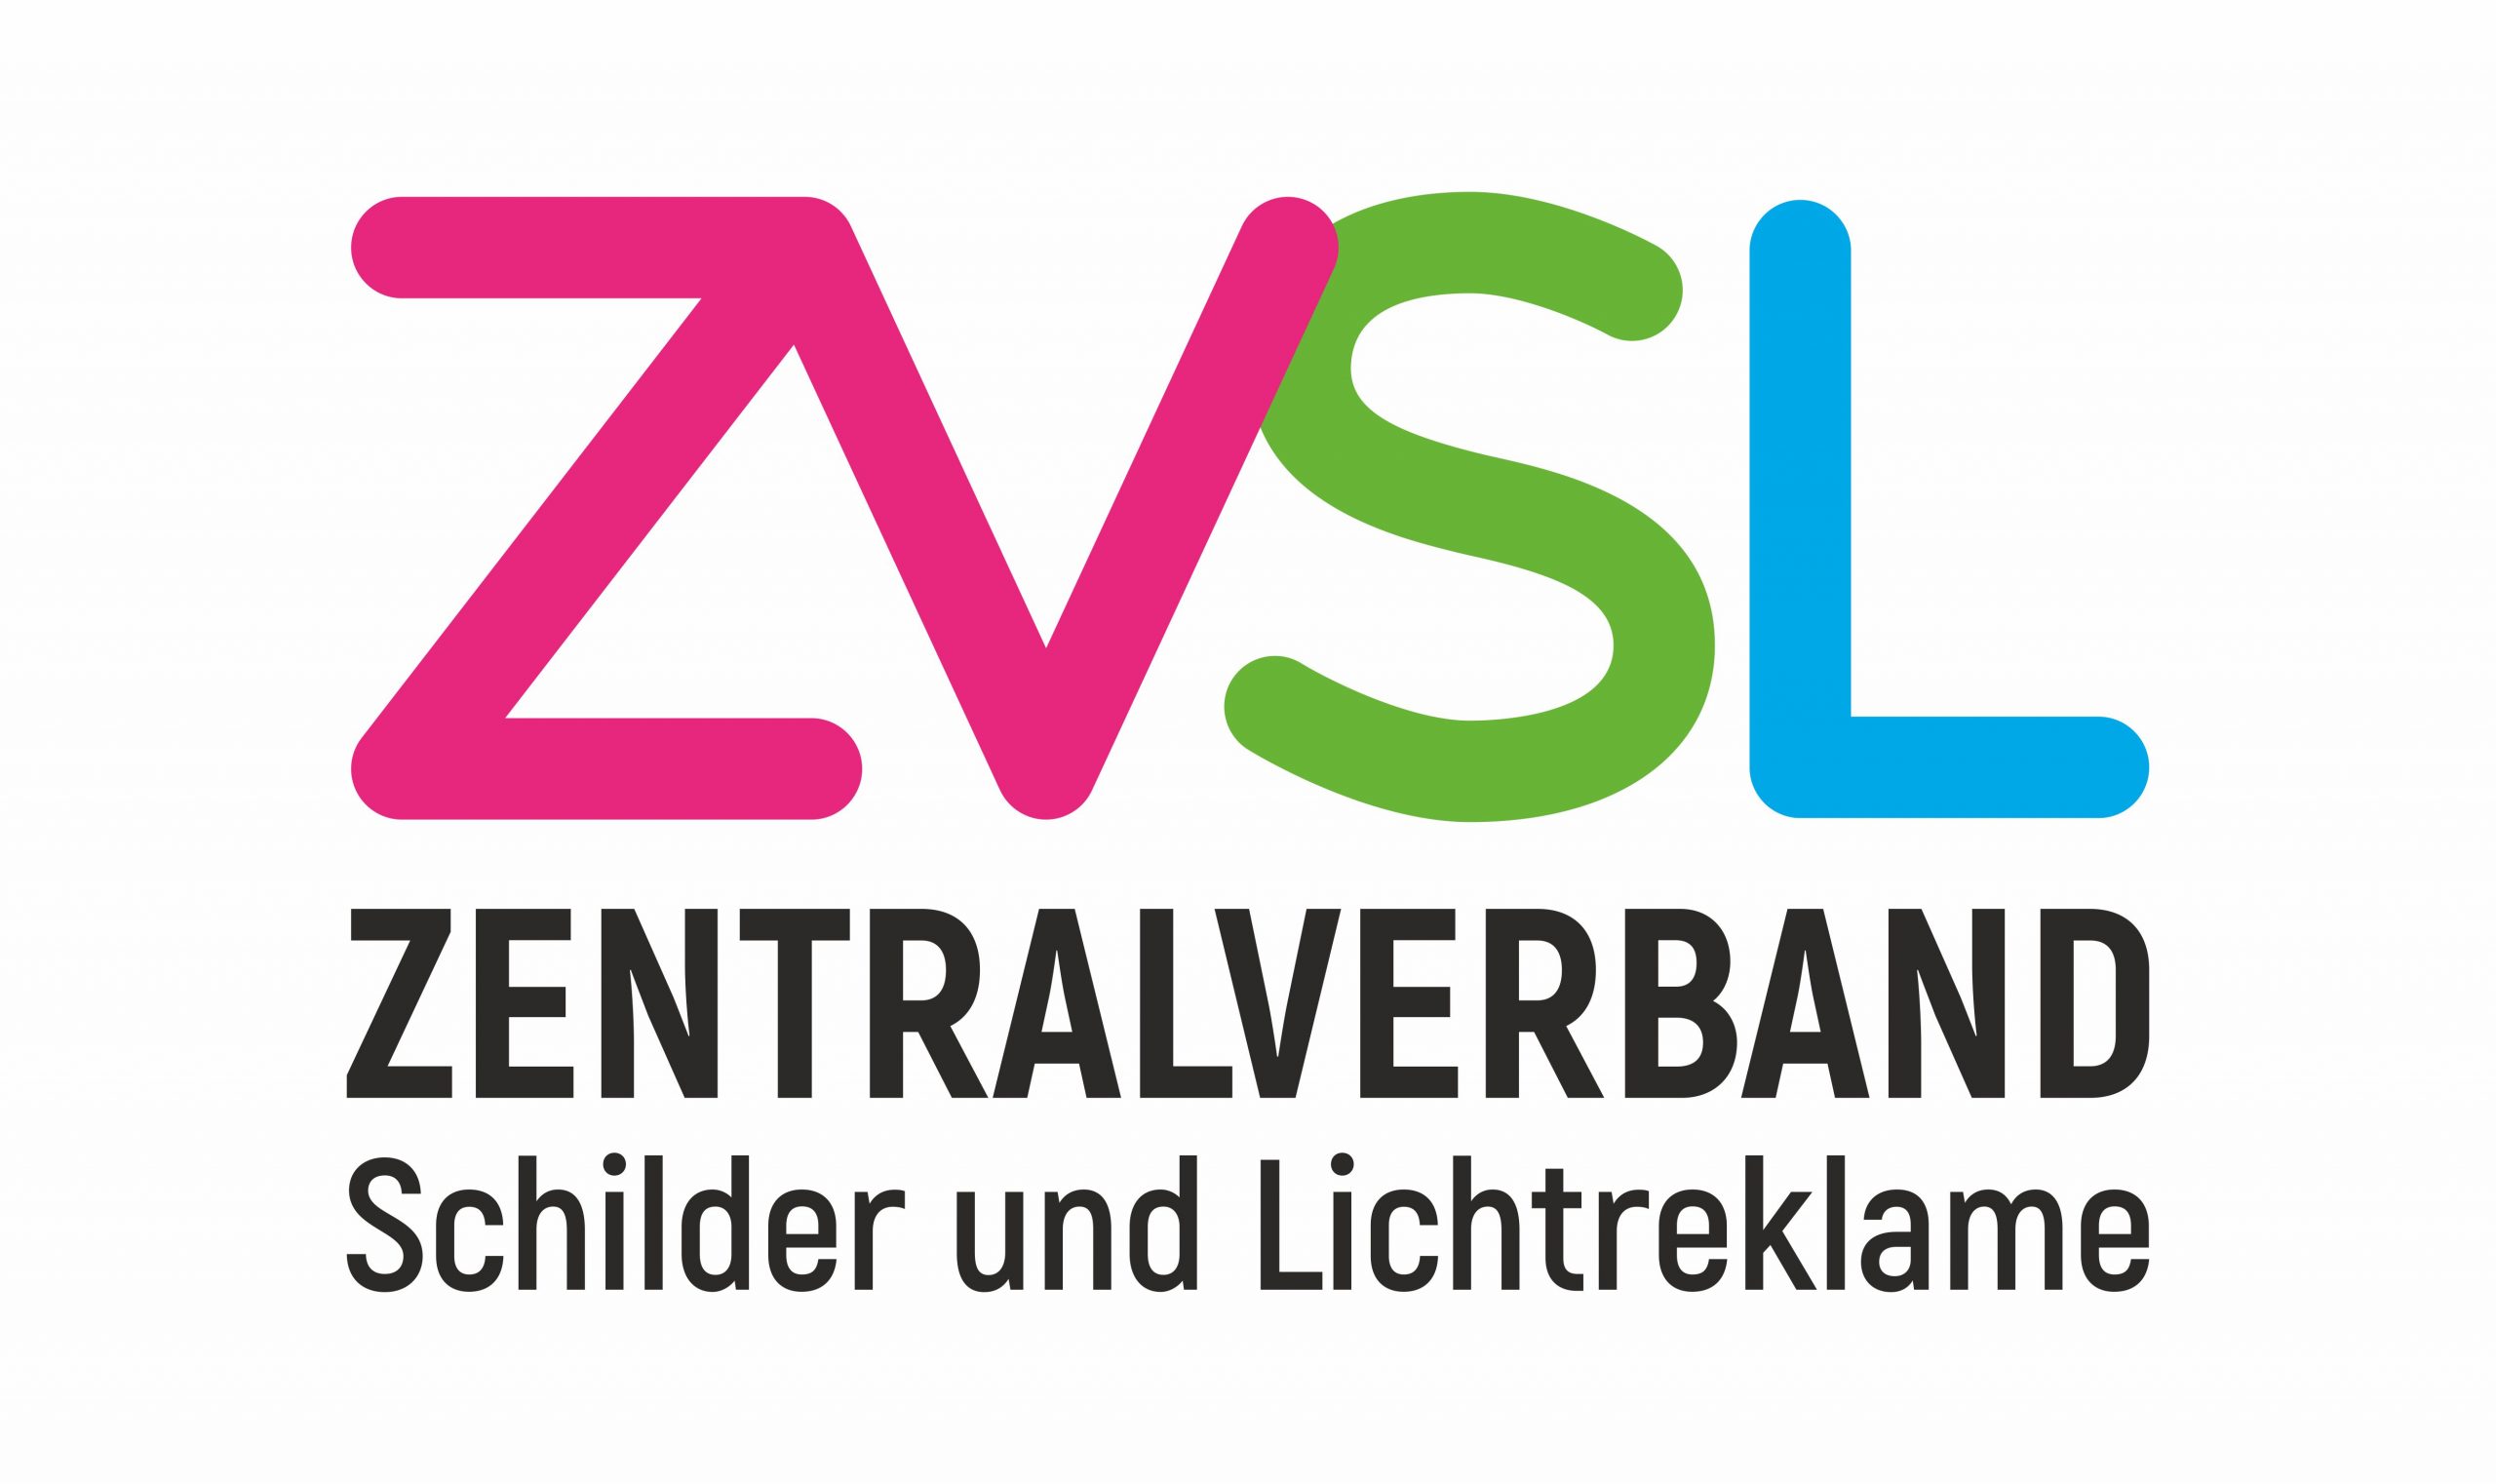 ZVSL Logo